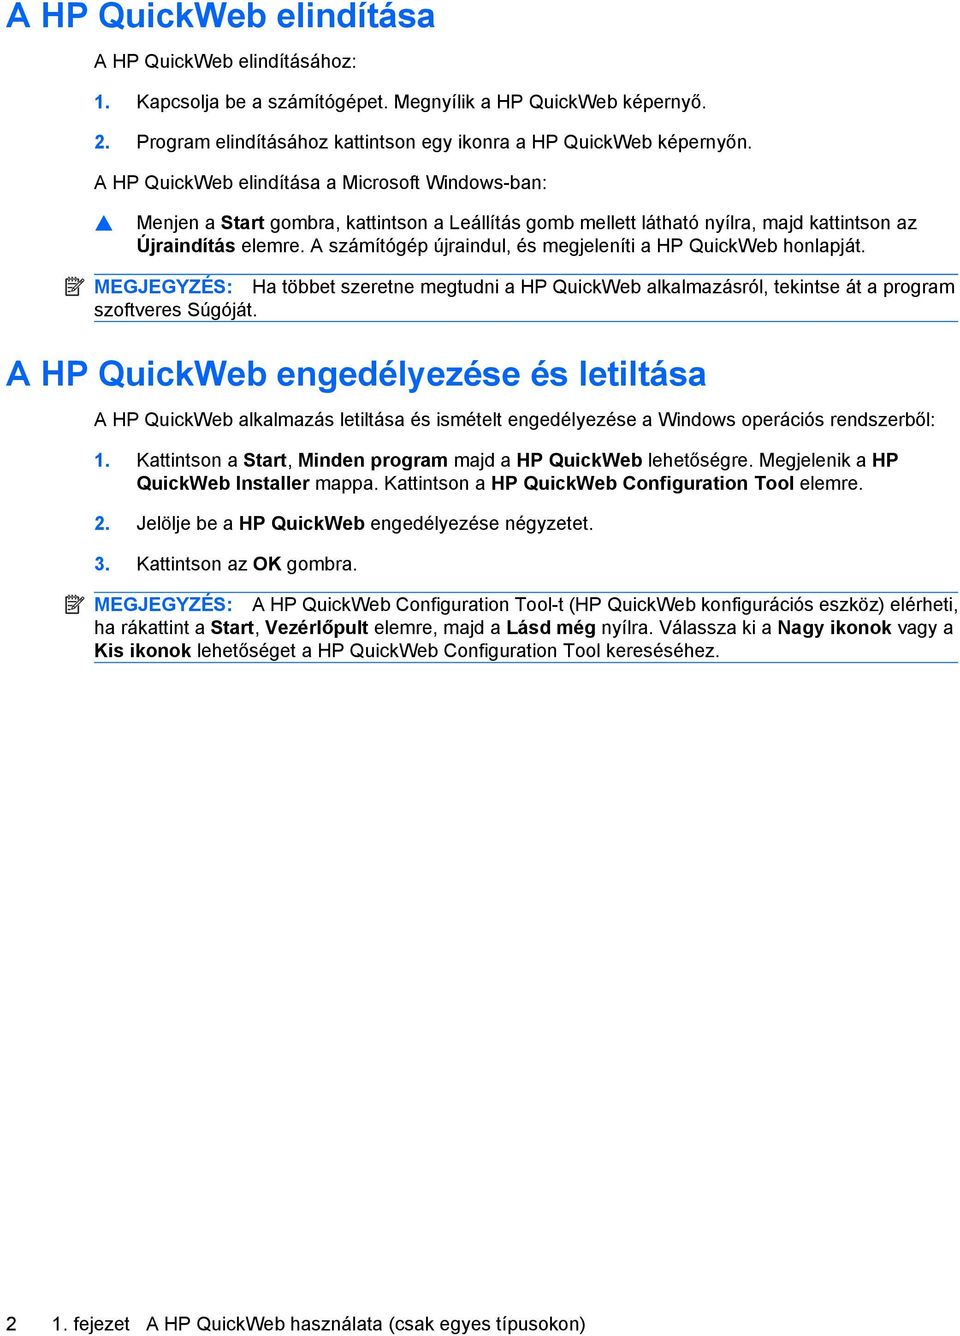 A számítógép újraindul, és megjeleníti a HP QuickWeb honlapját. MEGJEGYZÉS: Ha többet szeretne megtudni a HP QuickWeb alkalmazásról, tekintse át a program szoftveres Súgóját.